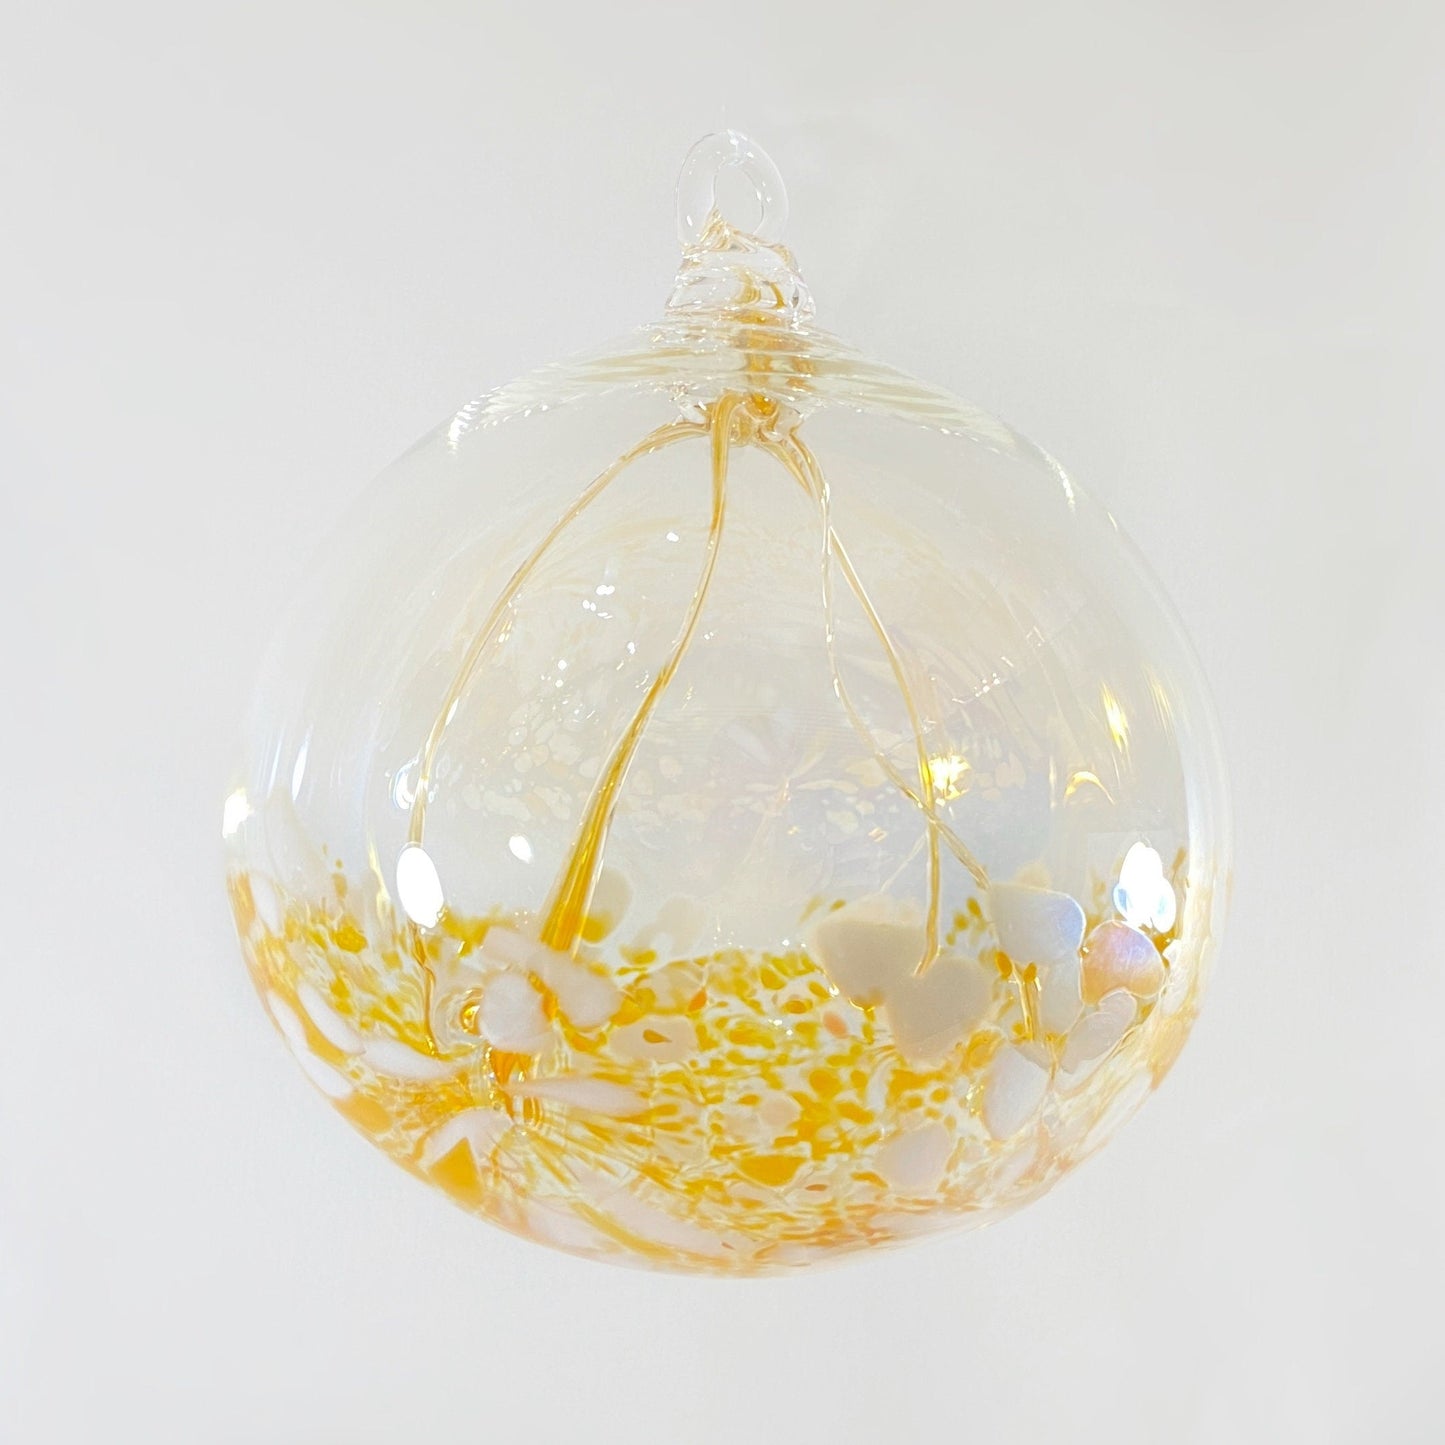 Handmade Glass Fairy Ball - Golden Orange